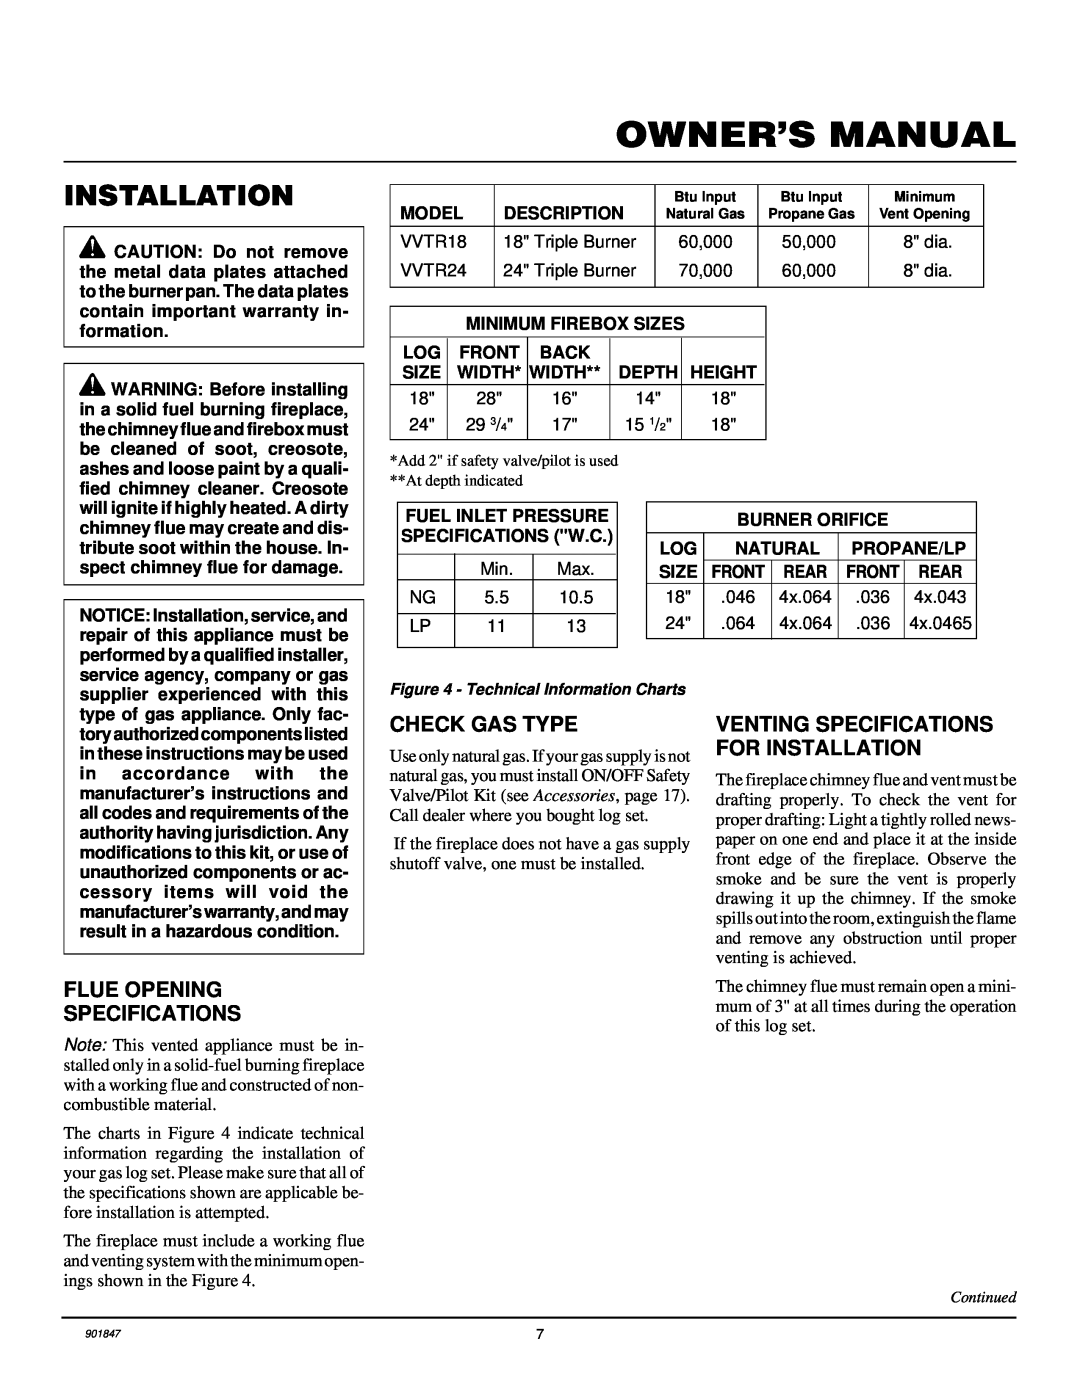 Desa VVTR18, VVTR24 installation manual Installation, Owner’S Manual, Flue Opening Specifications, Check Gas Type 